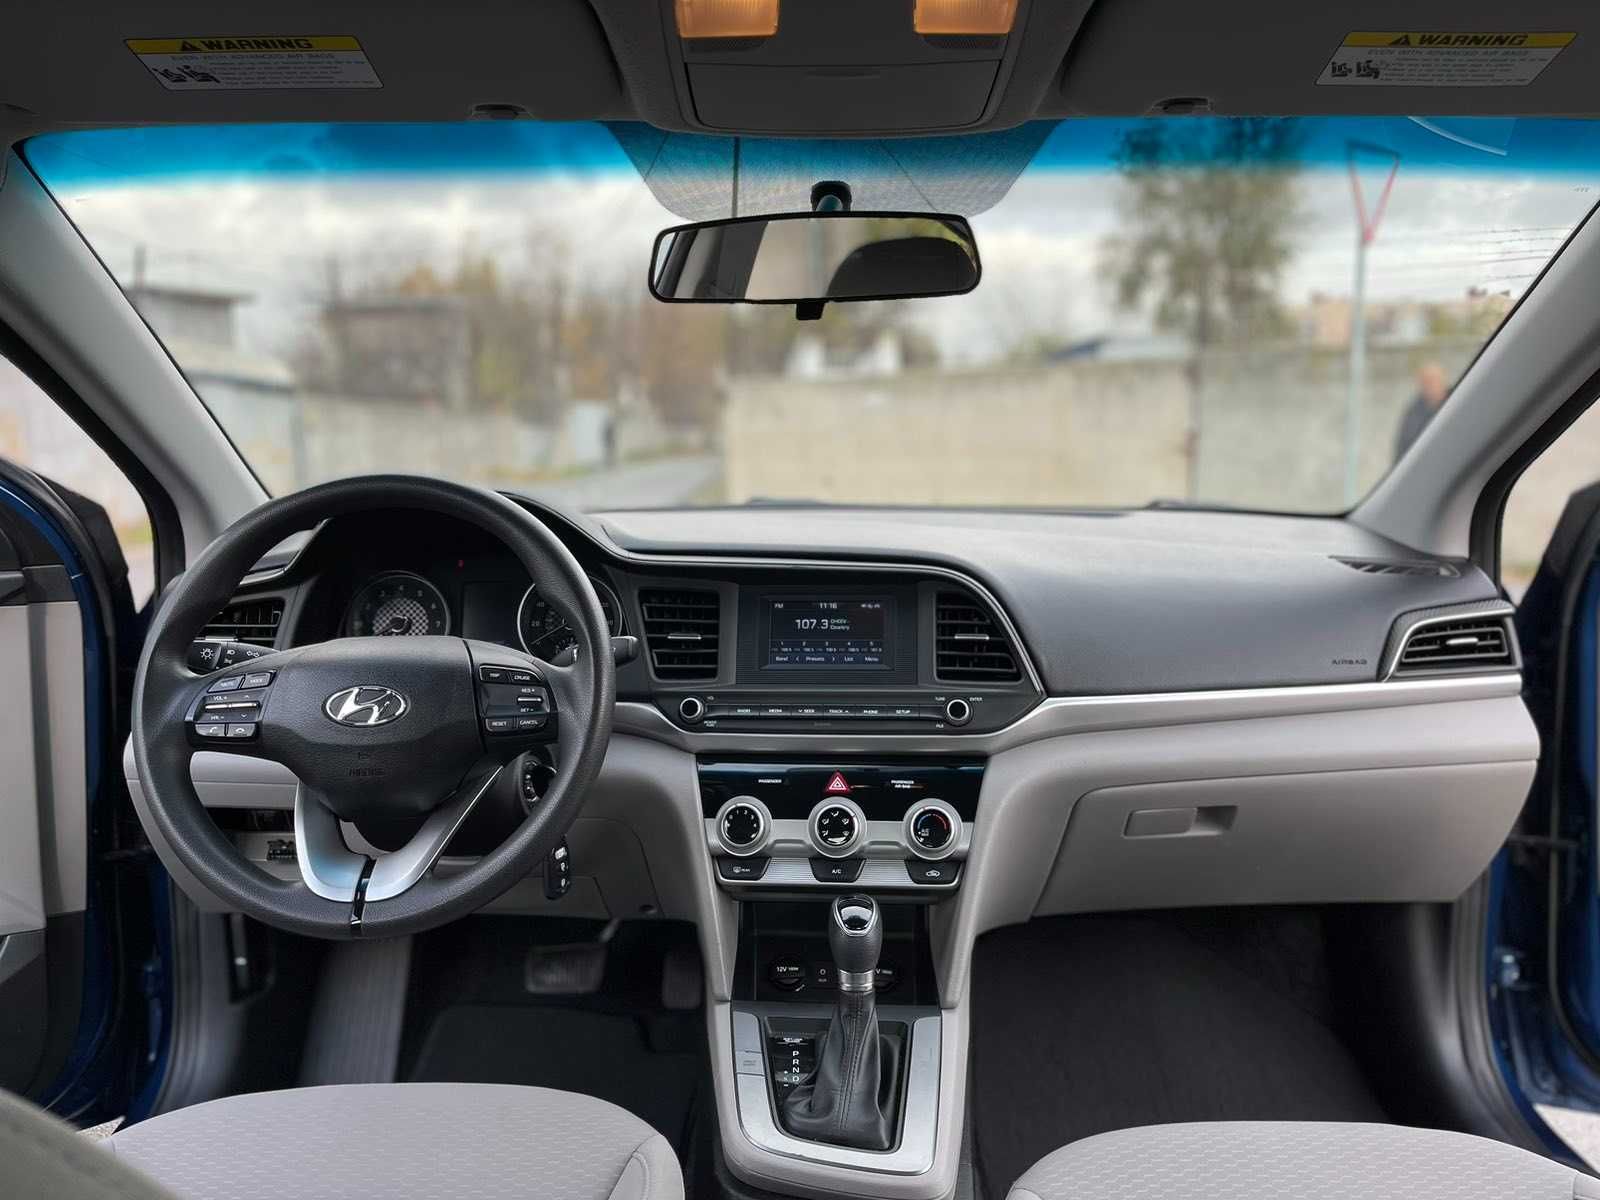 Продам Hyundai Elantra 2019 VI поколение (FL)